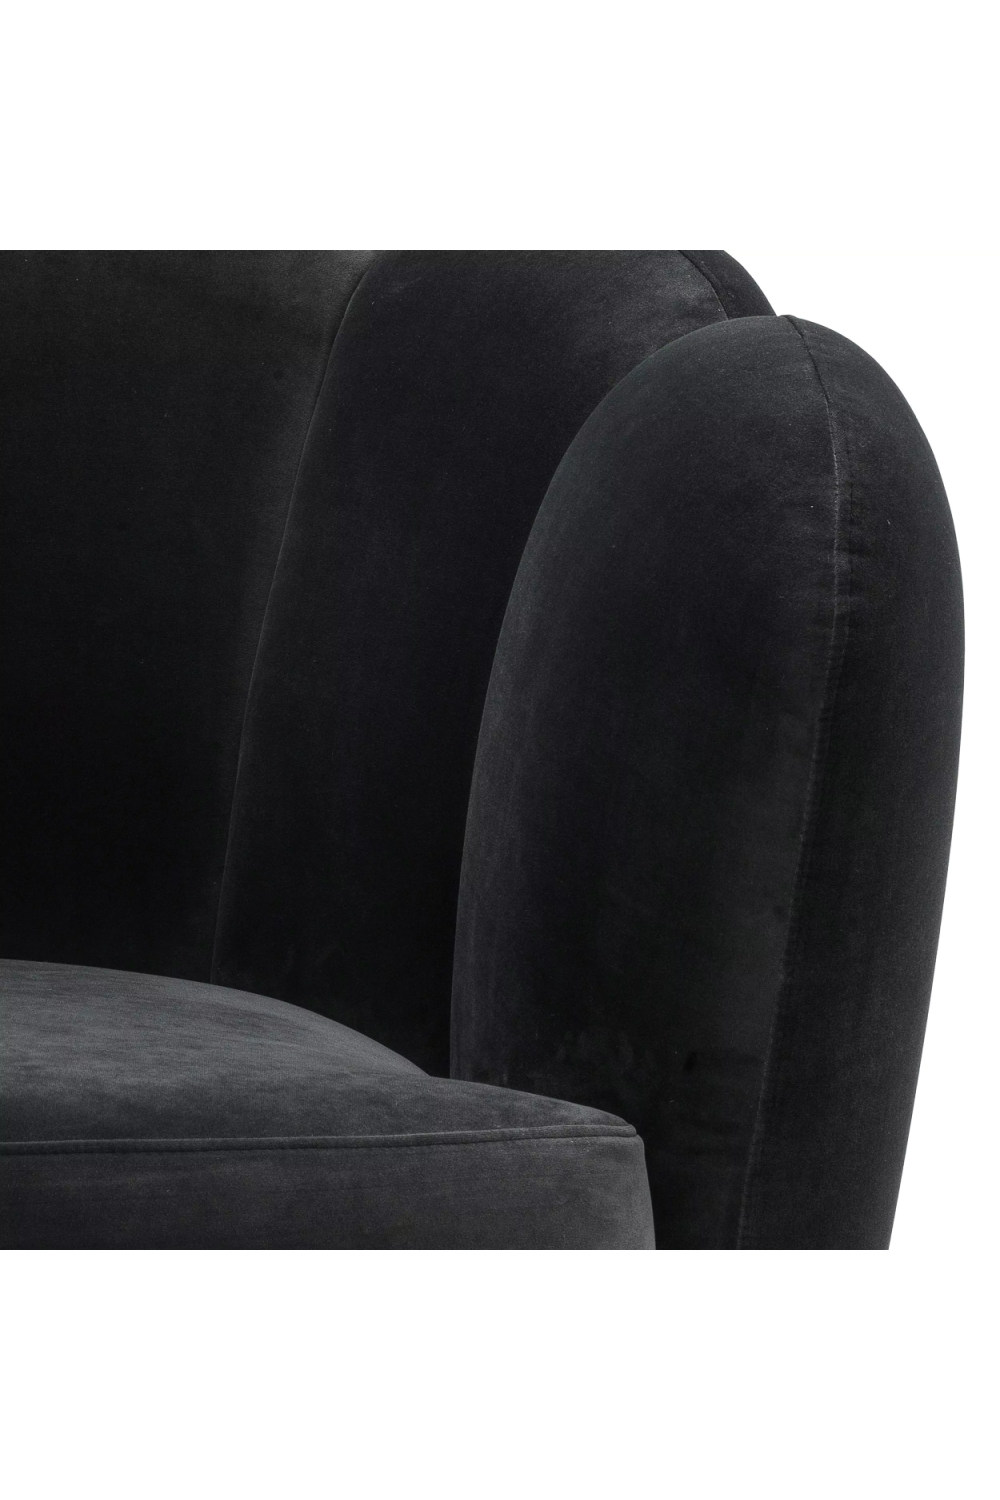 Gray Velvet Scalloped Swivel Chair | Eichholtz Mirage | Oroa.com